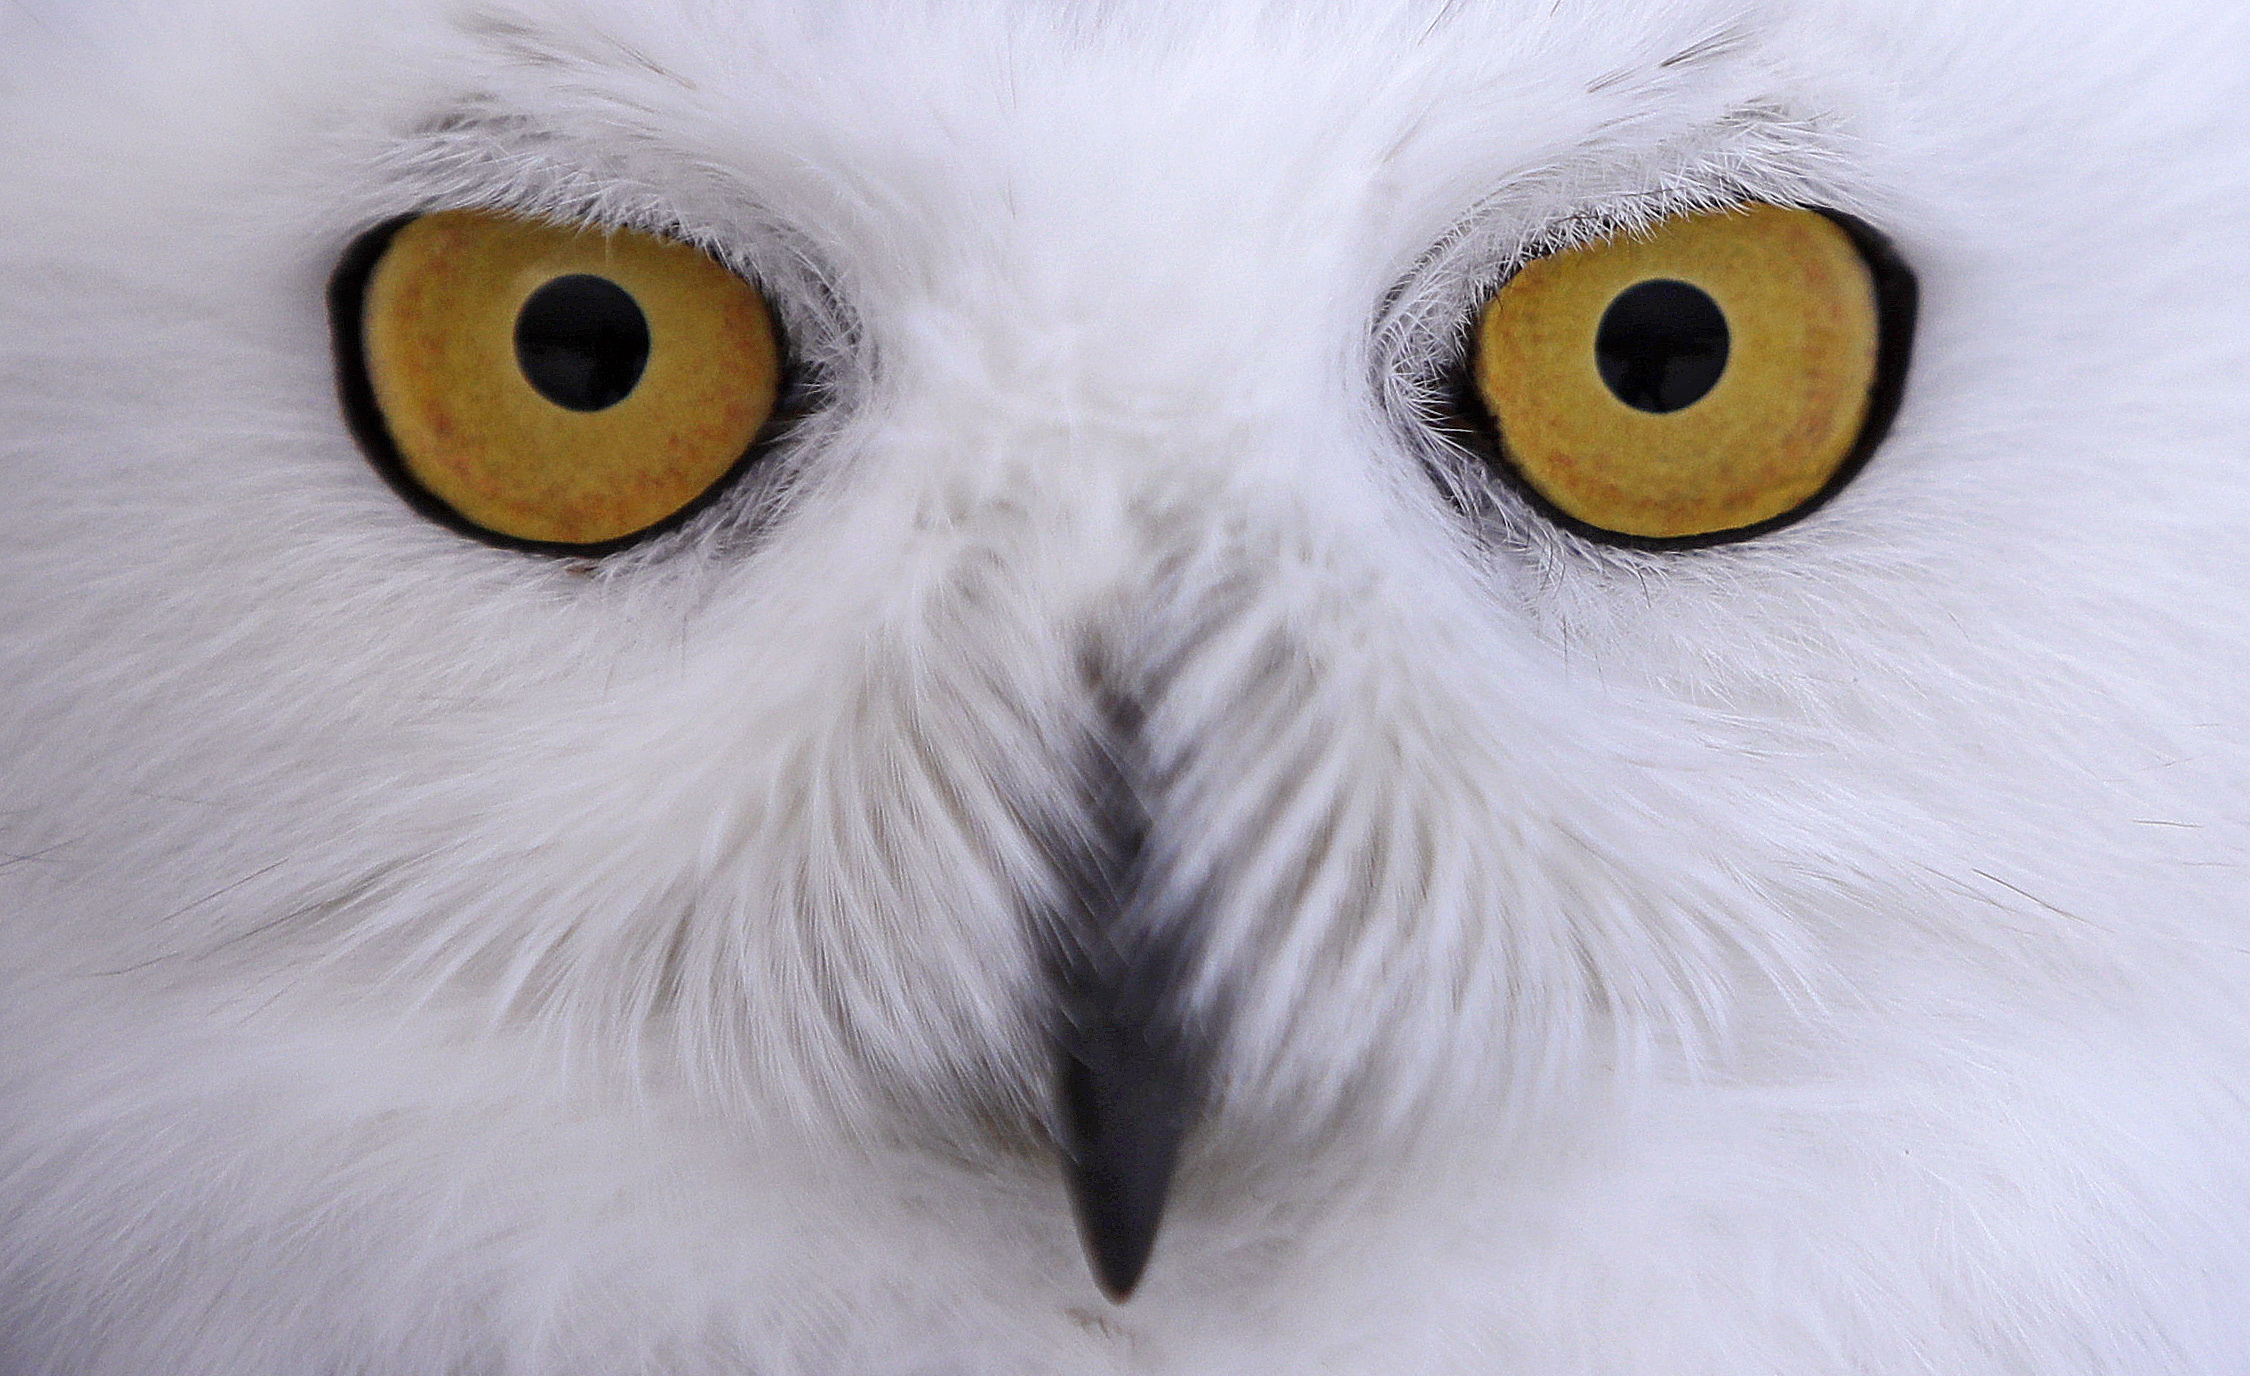 A photo a snowy owl